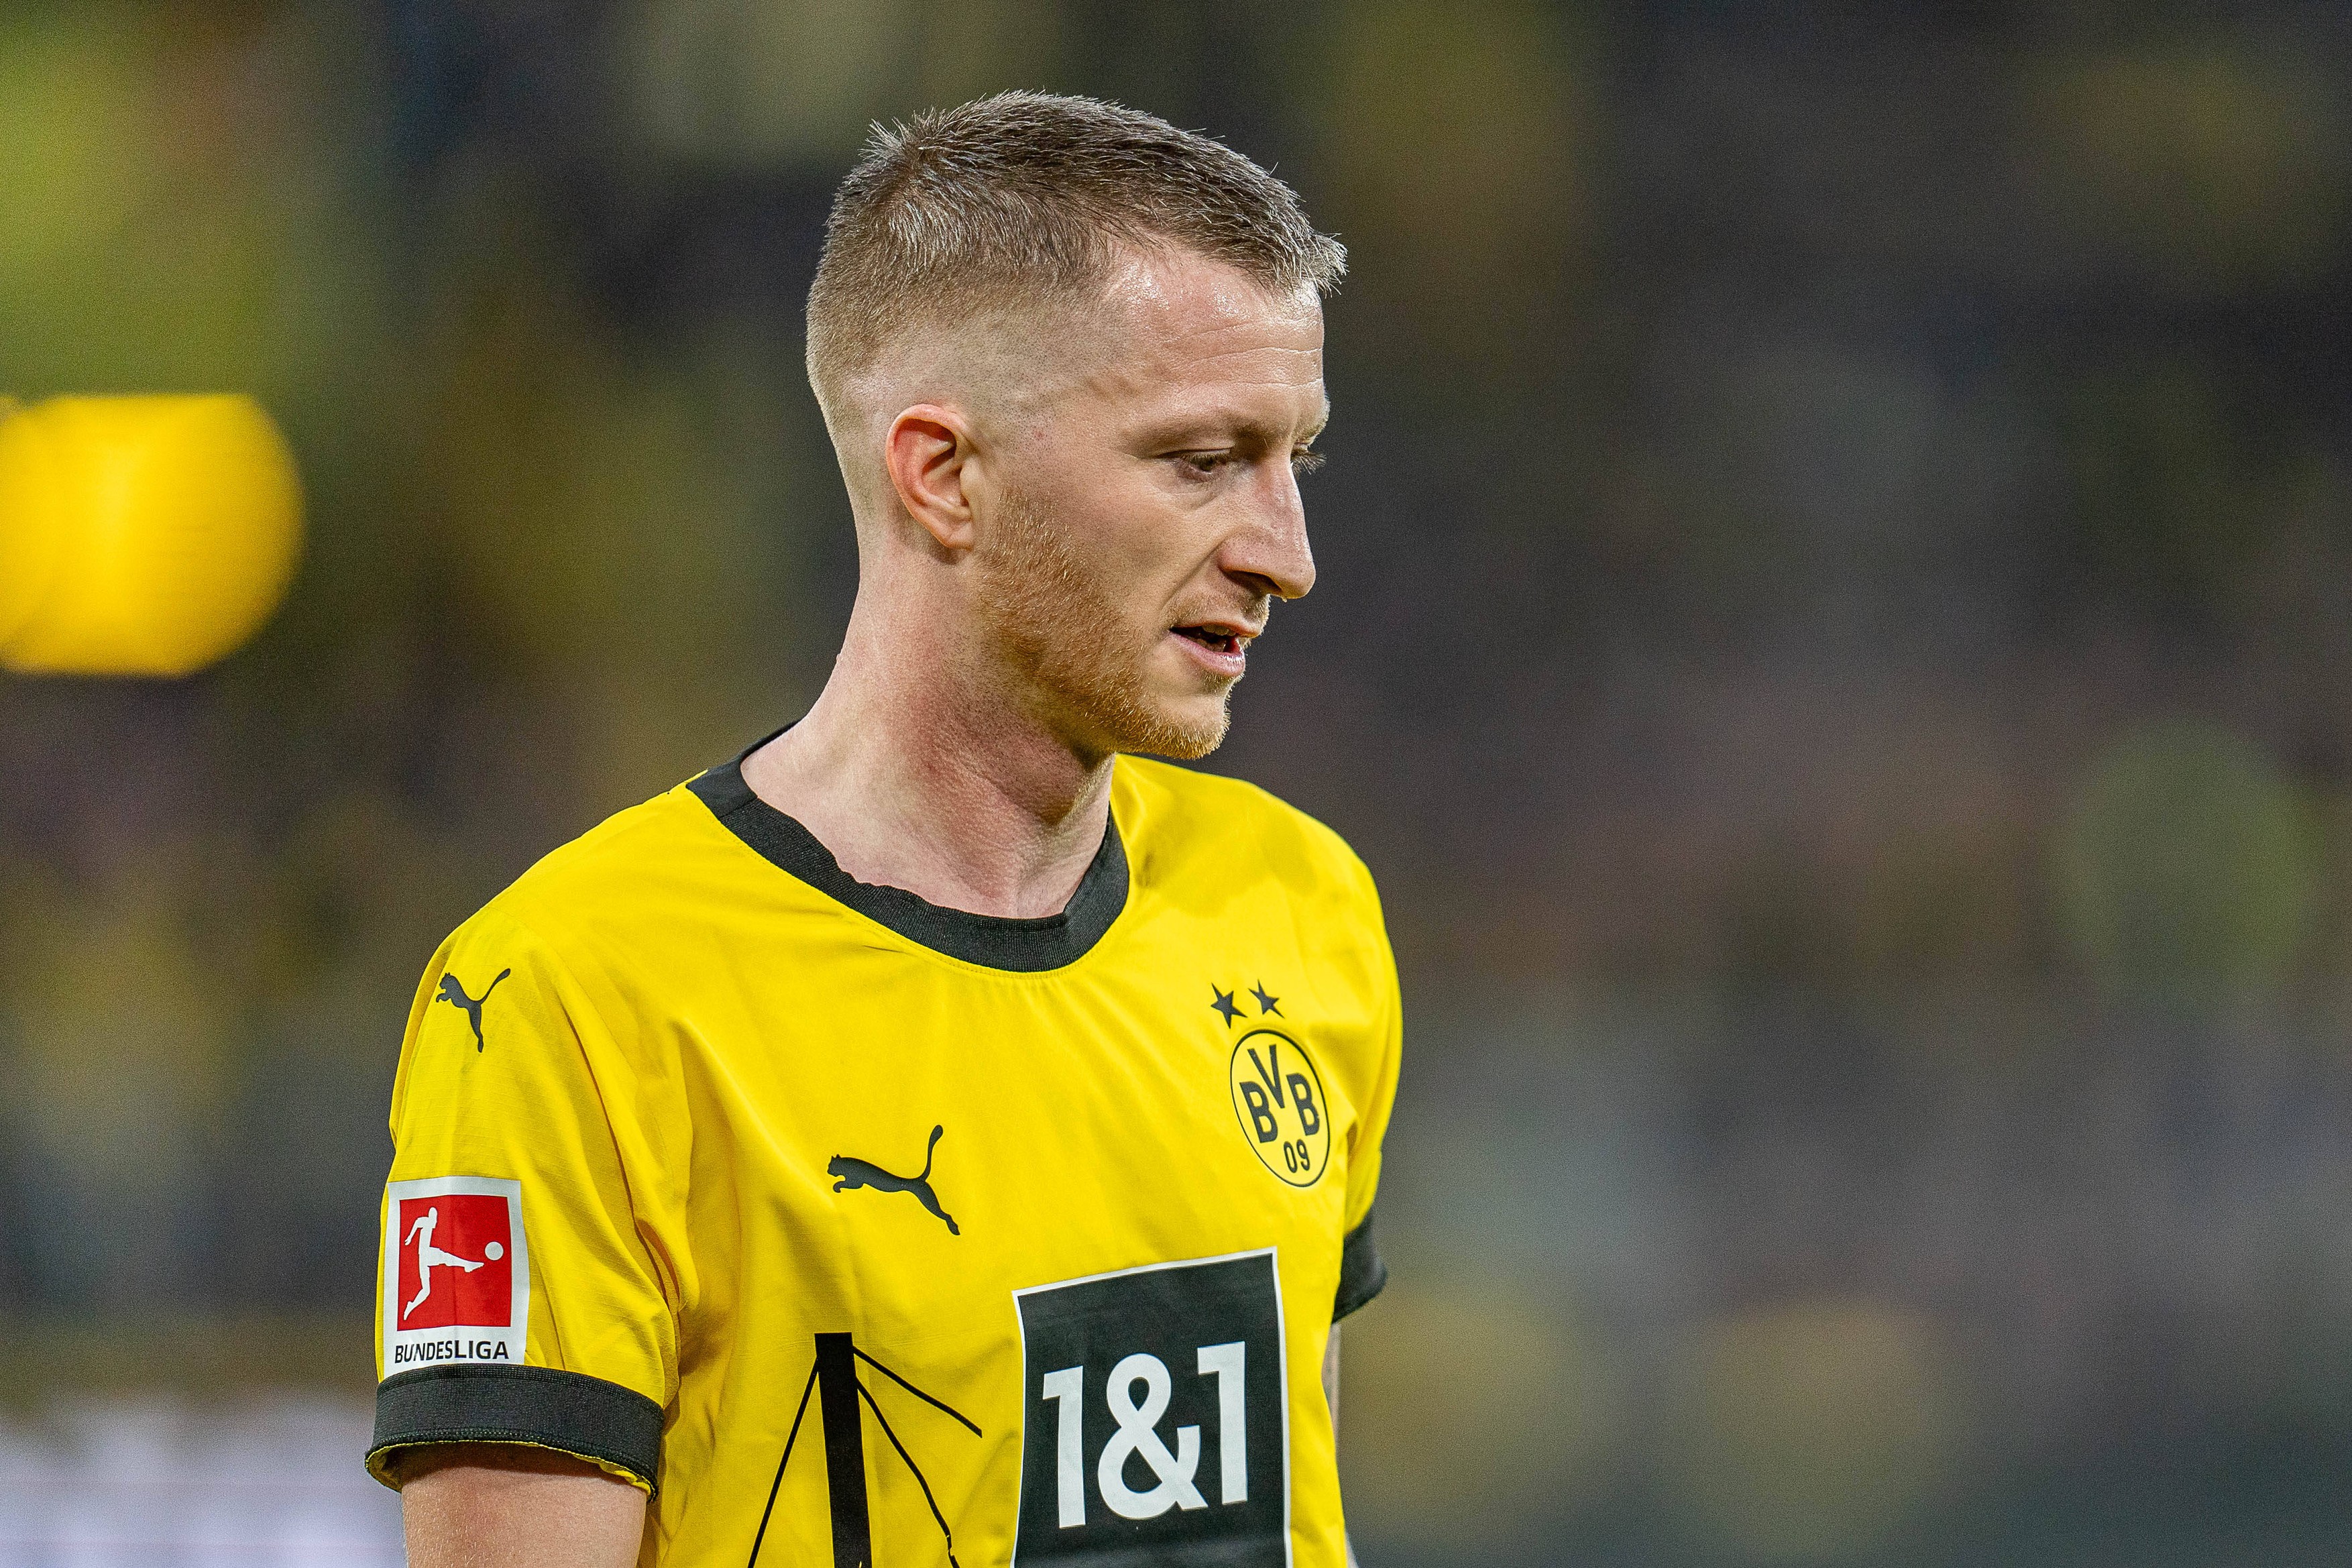 Reacția lui Marco Reus, după ce a fost anunțată plecarea sa de la Borussia Dortmund: ”Am lămurit lucrurile”